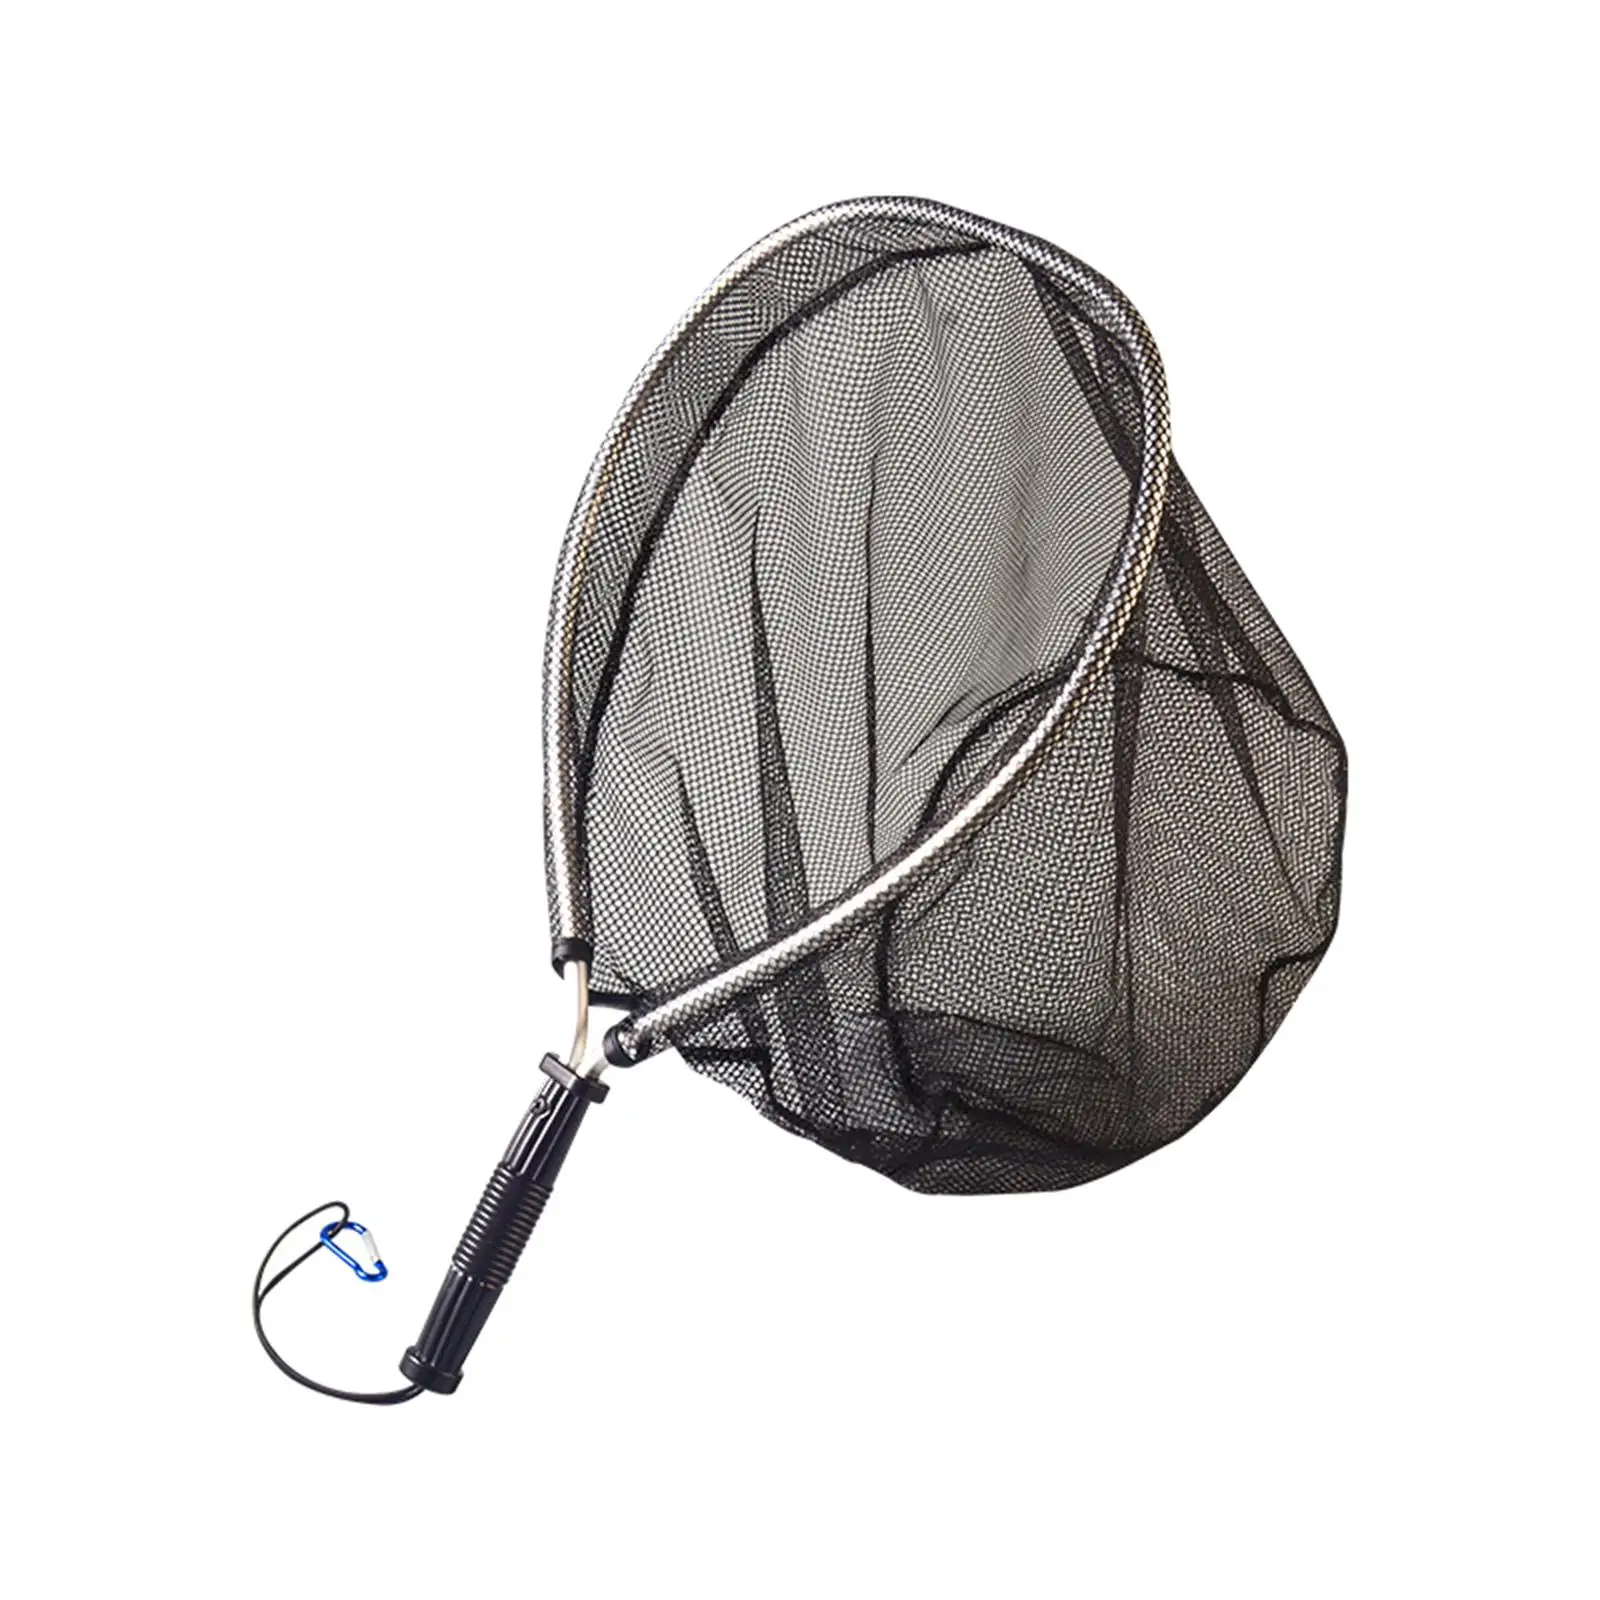 Fishing Landing Net Portable Lightweight Fishing Mesh Net Nonslip Grip for Freshwater Saltwater Kayak Boat Fishing Accessories